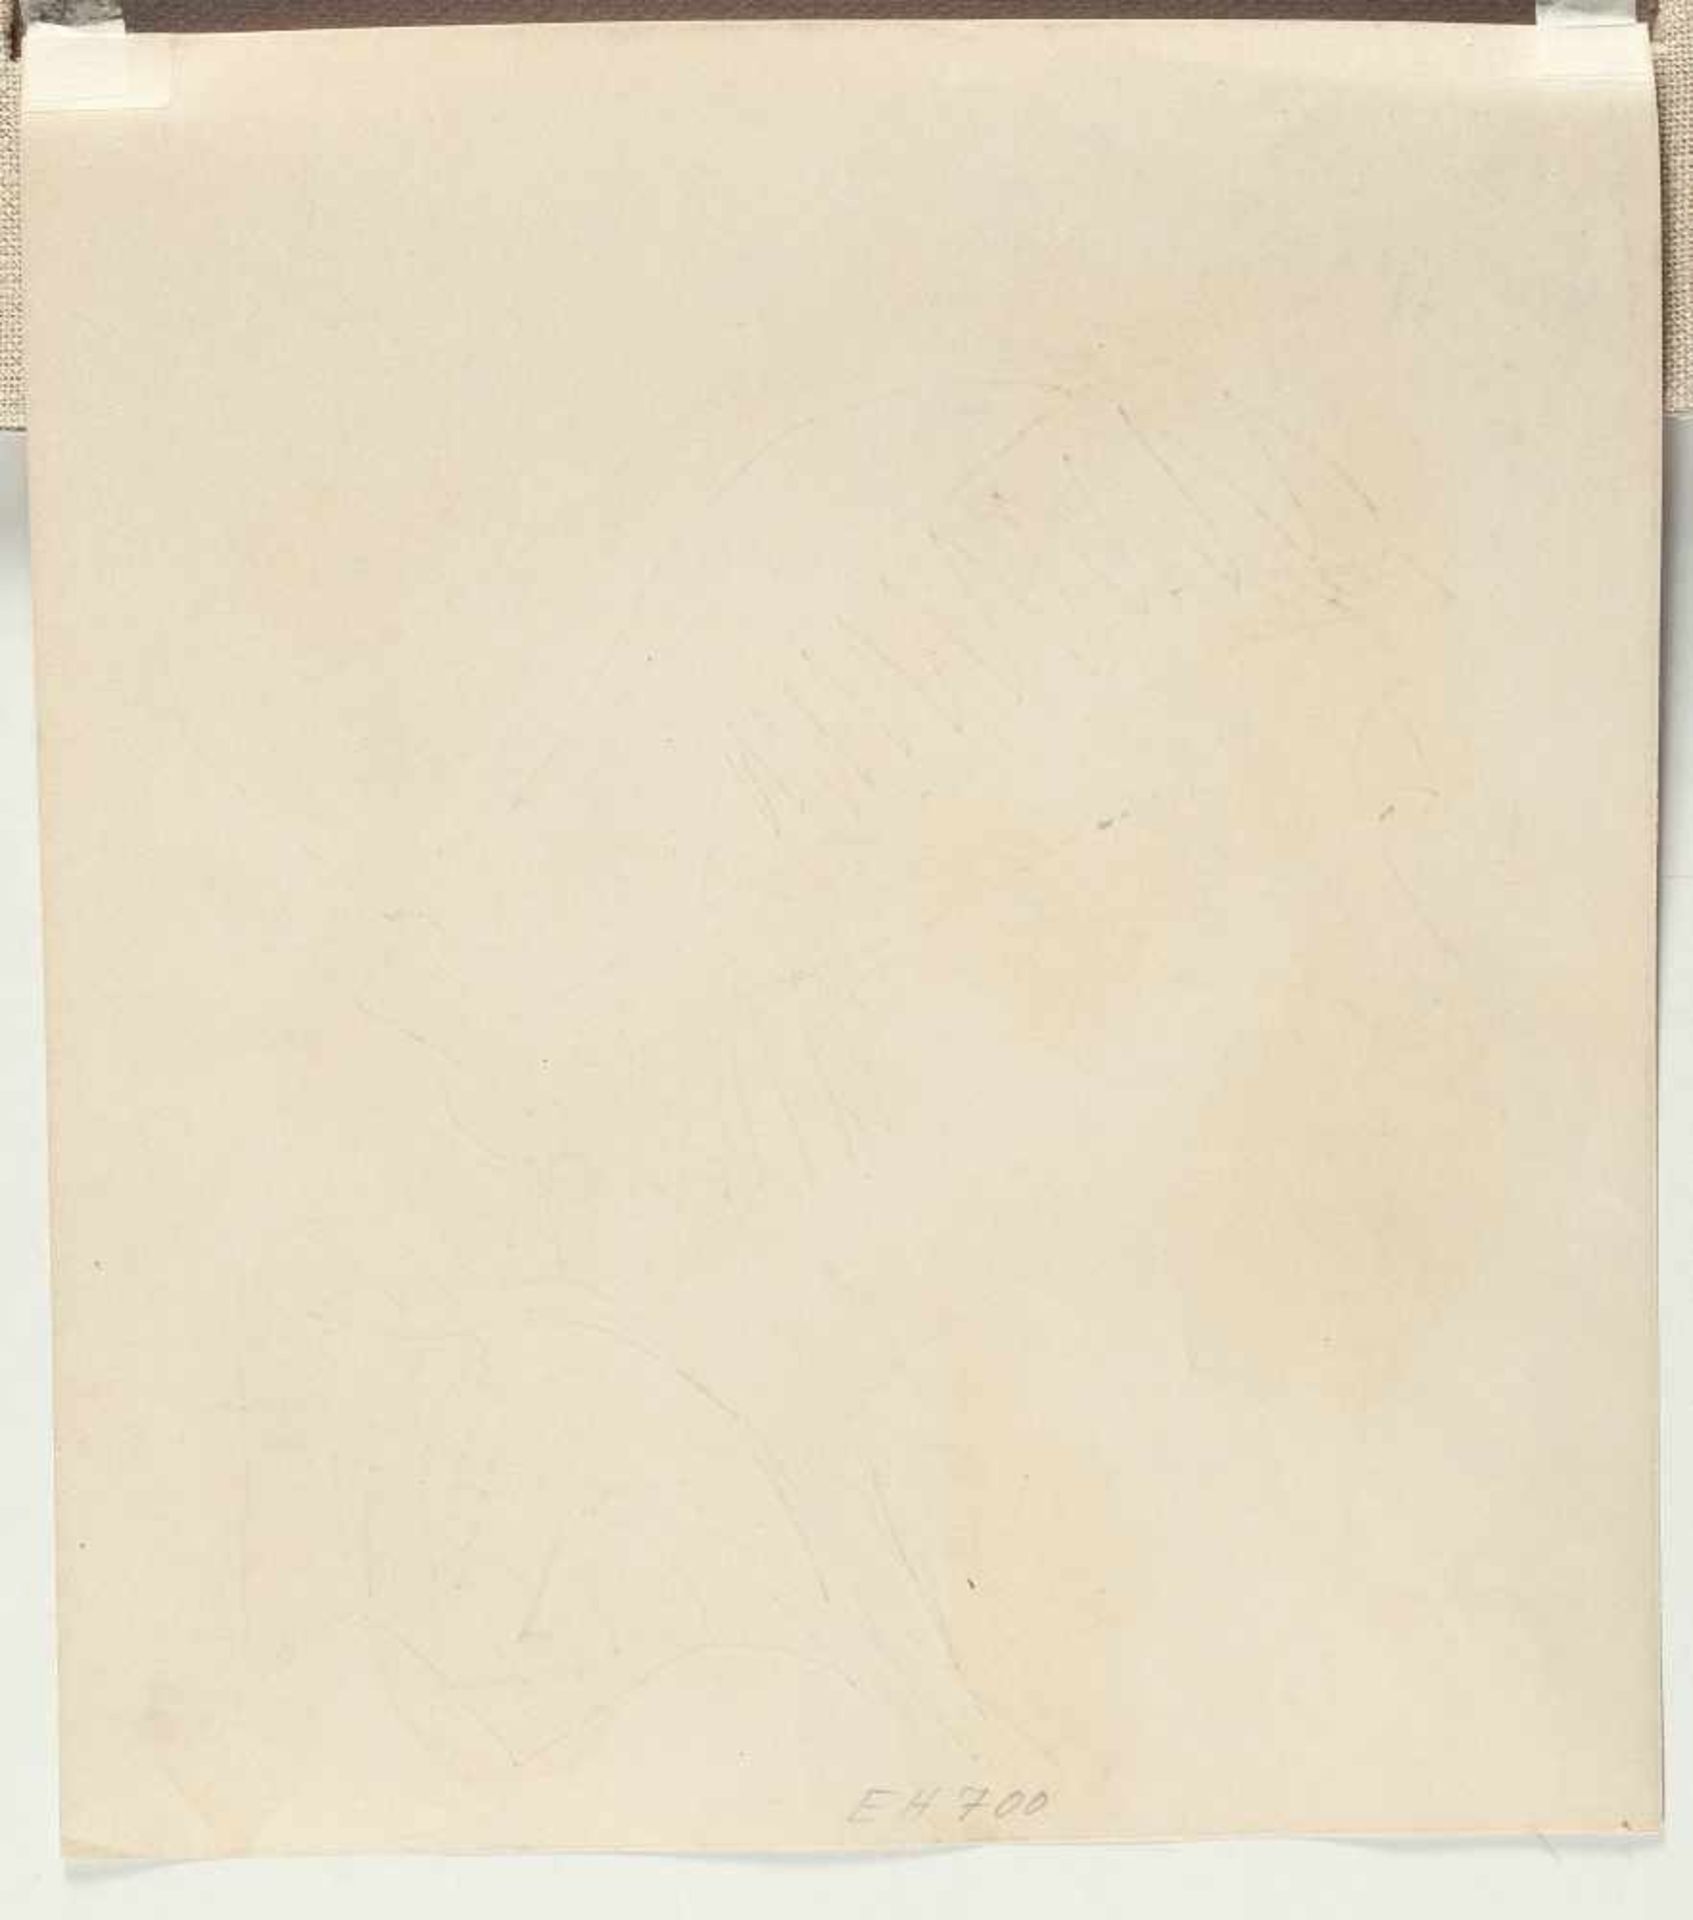 Erich Heckel „Die schwarze Kappe“ Bleistift, teils laviert, auf Velin. (19)10. Ca. 32 x 28 cm. - Image 3 of 3